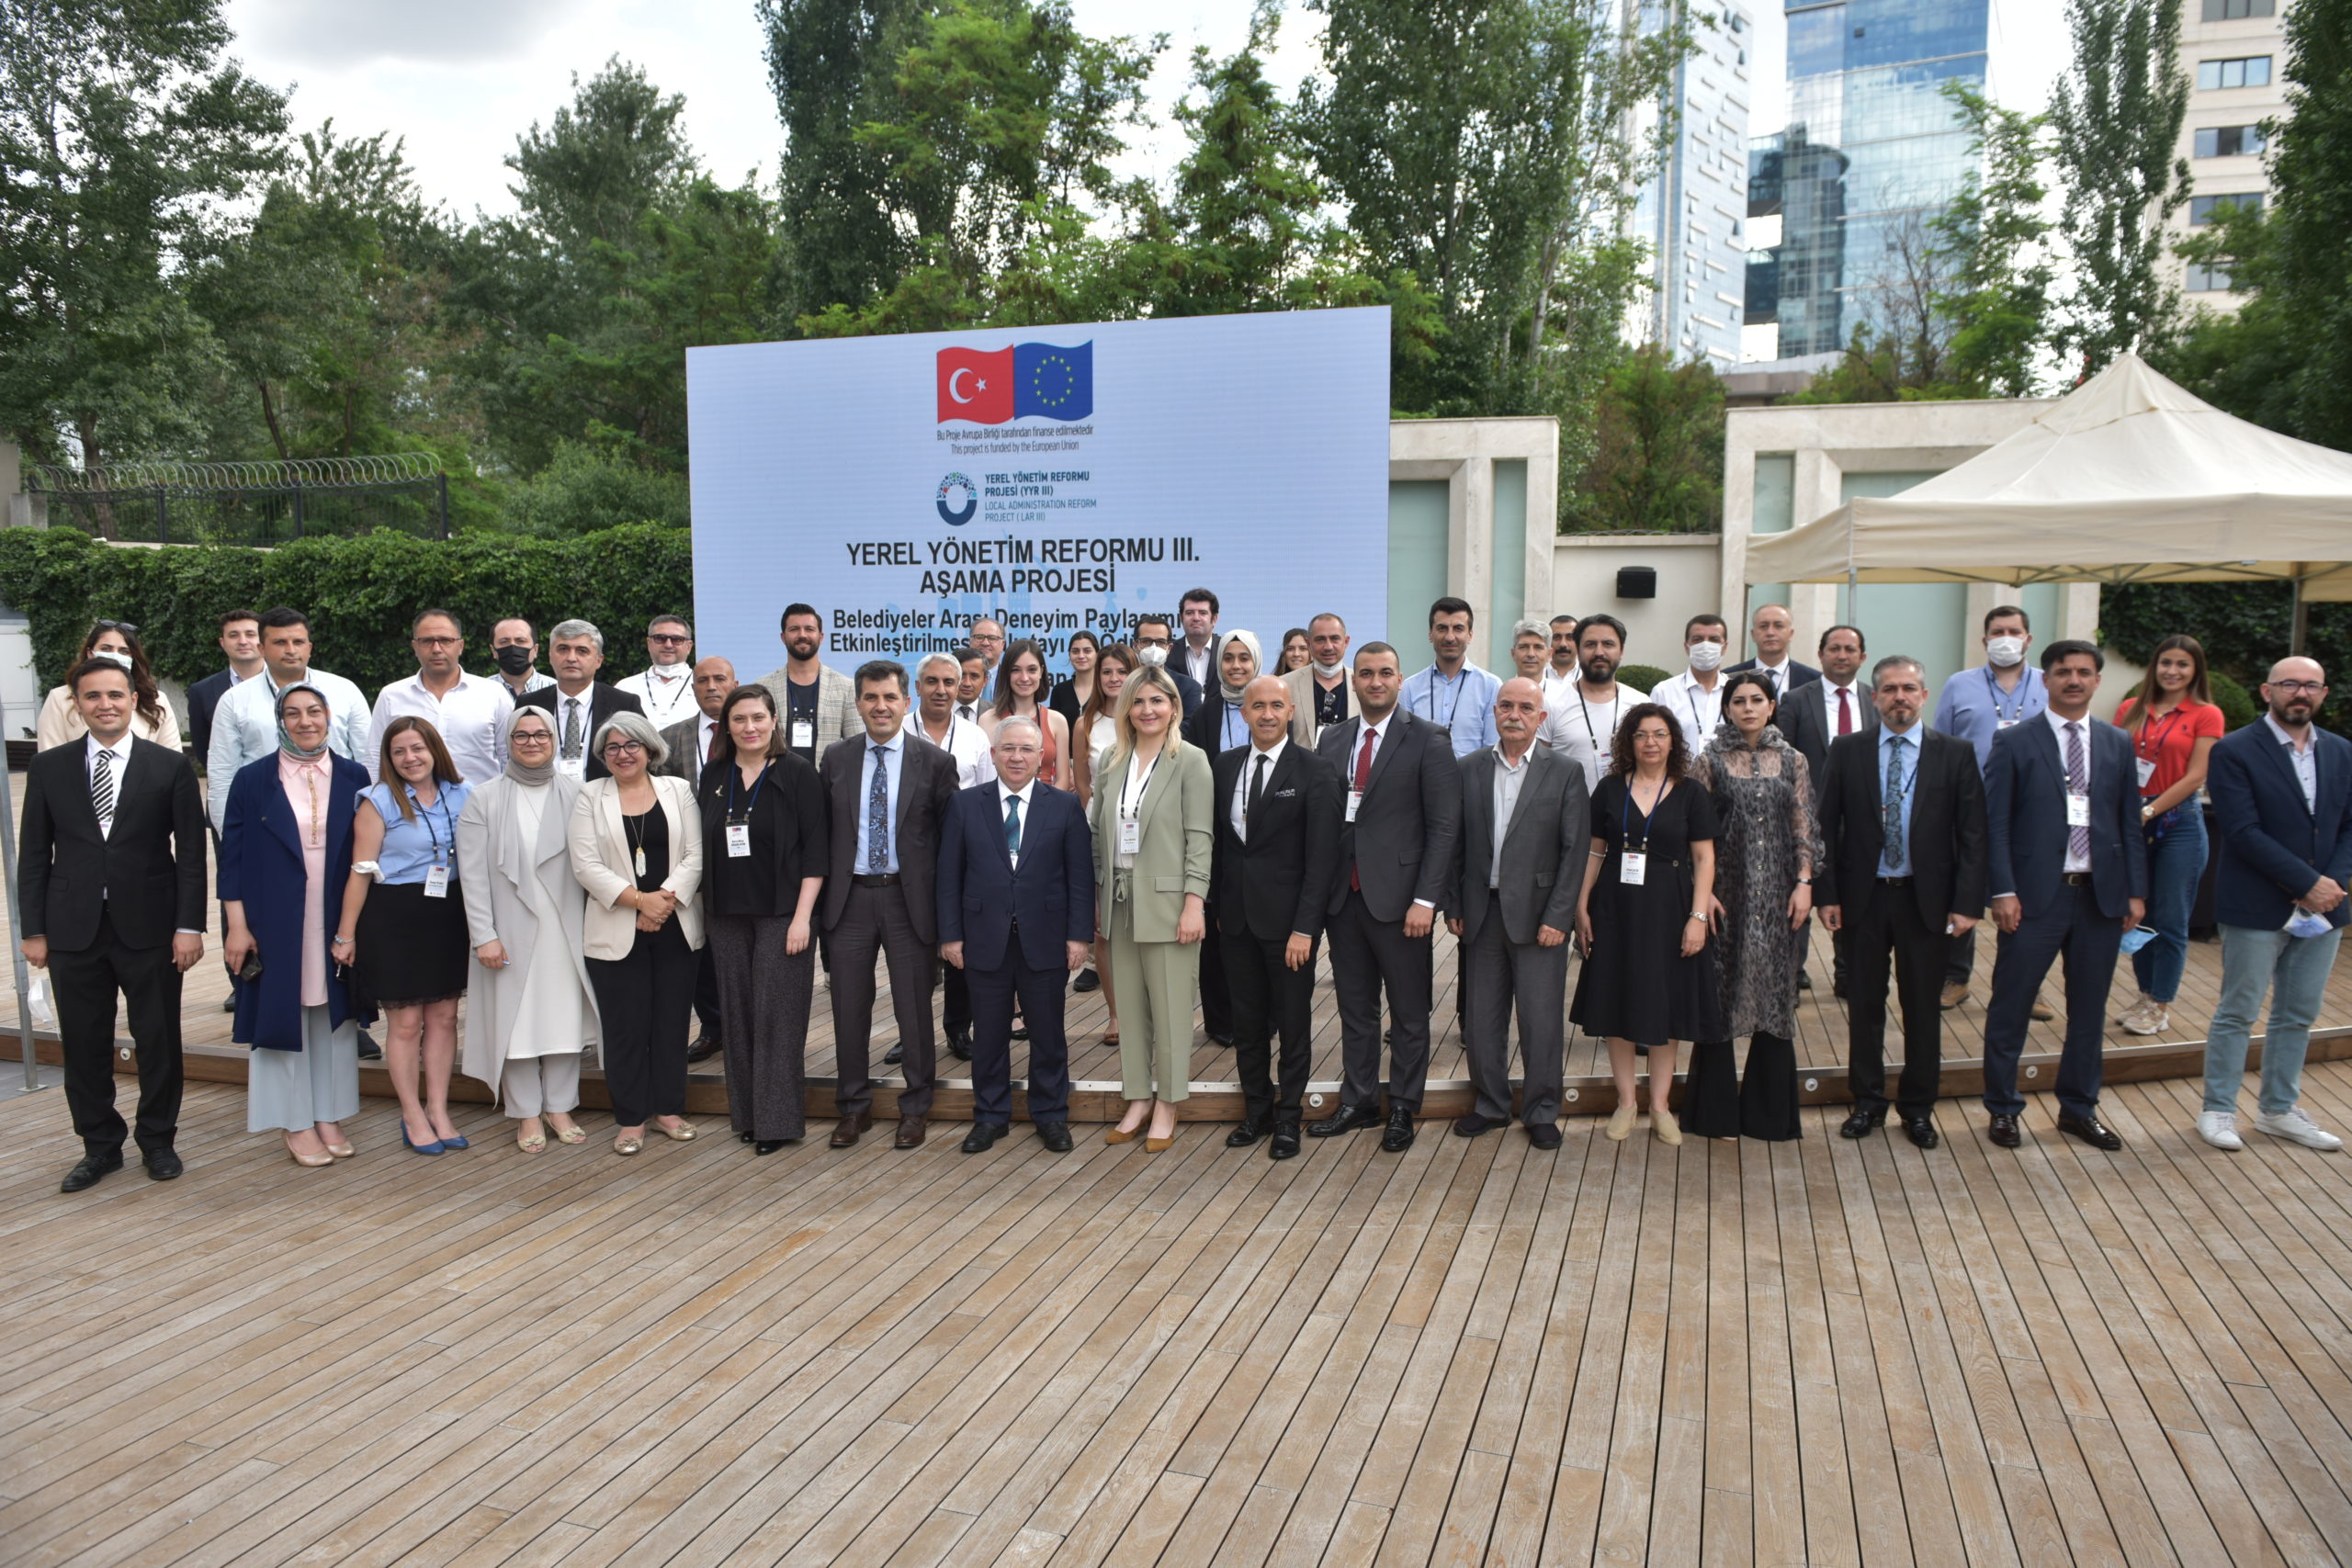  Manisa Büyükşehir, Yerel Yönetim Reformu 3. Aşama Projeleri Ödüllendirdi